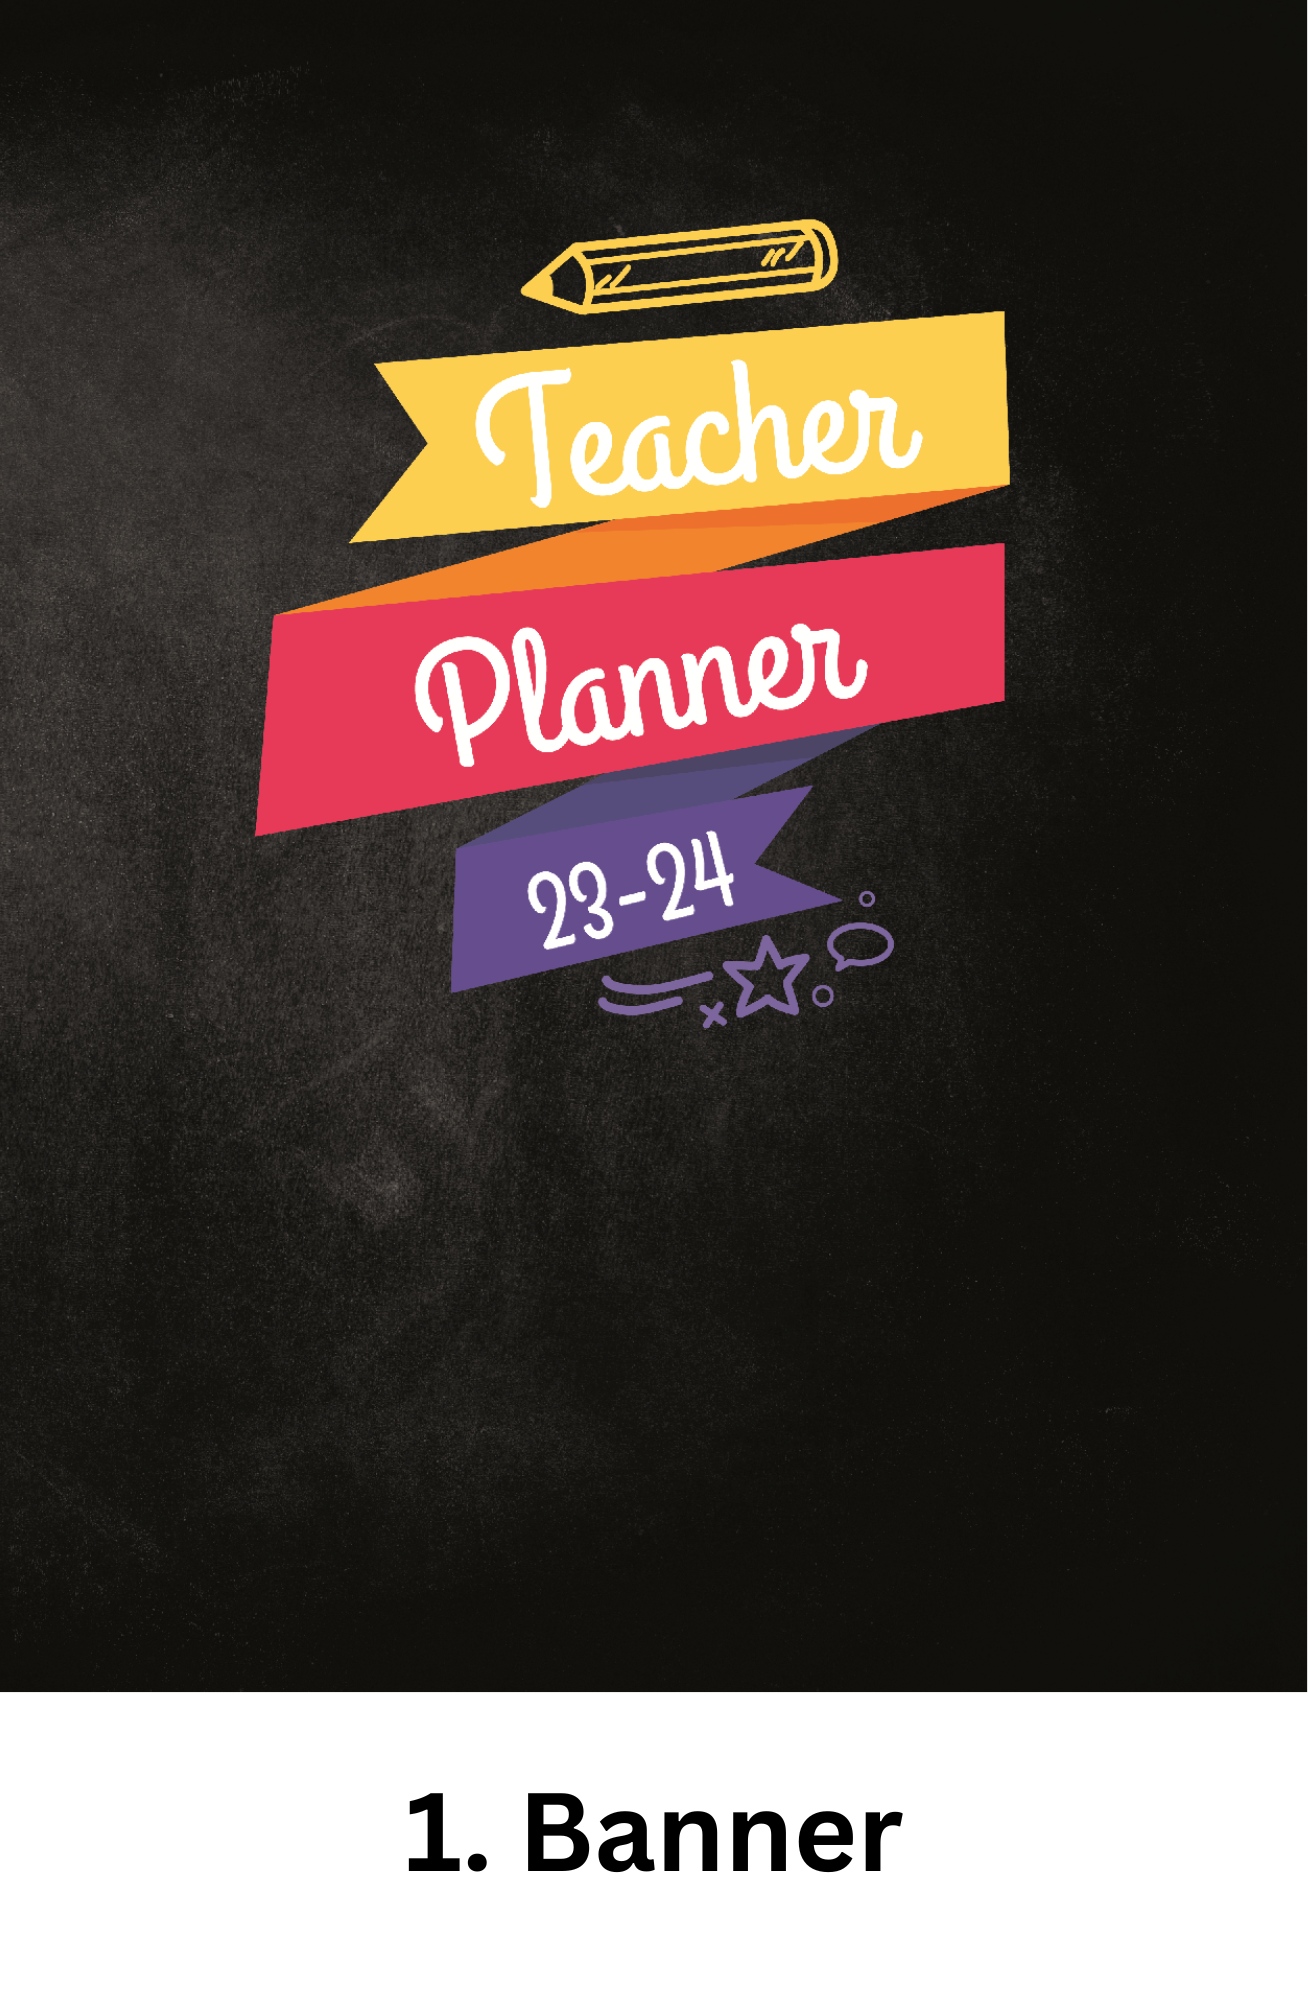 Monthly Teacher Planner - Mini Size/Spiral X